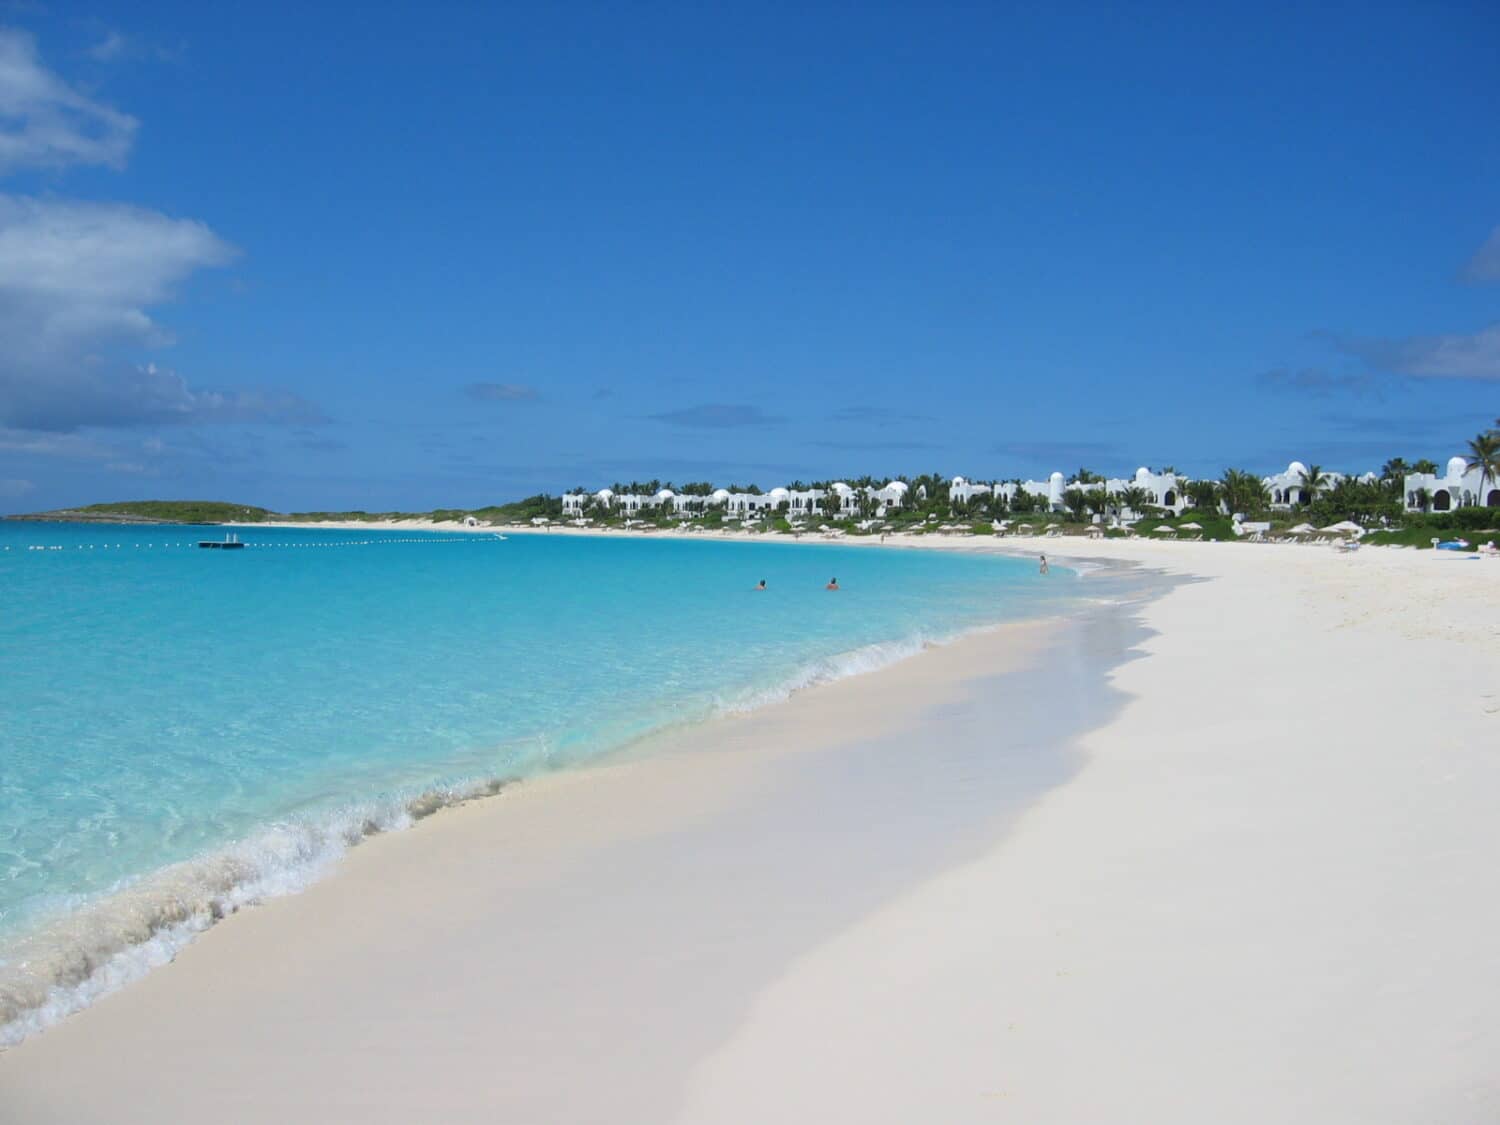 Praia com areia branca e mar azul cristalino, em um dia ensolarado, com o céu bem azul, além da vista de um resort, localizado na costa e rodeado de árvores verdes